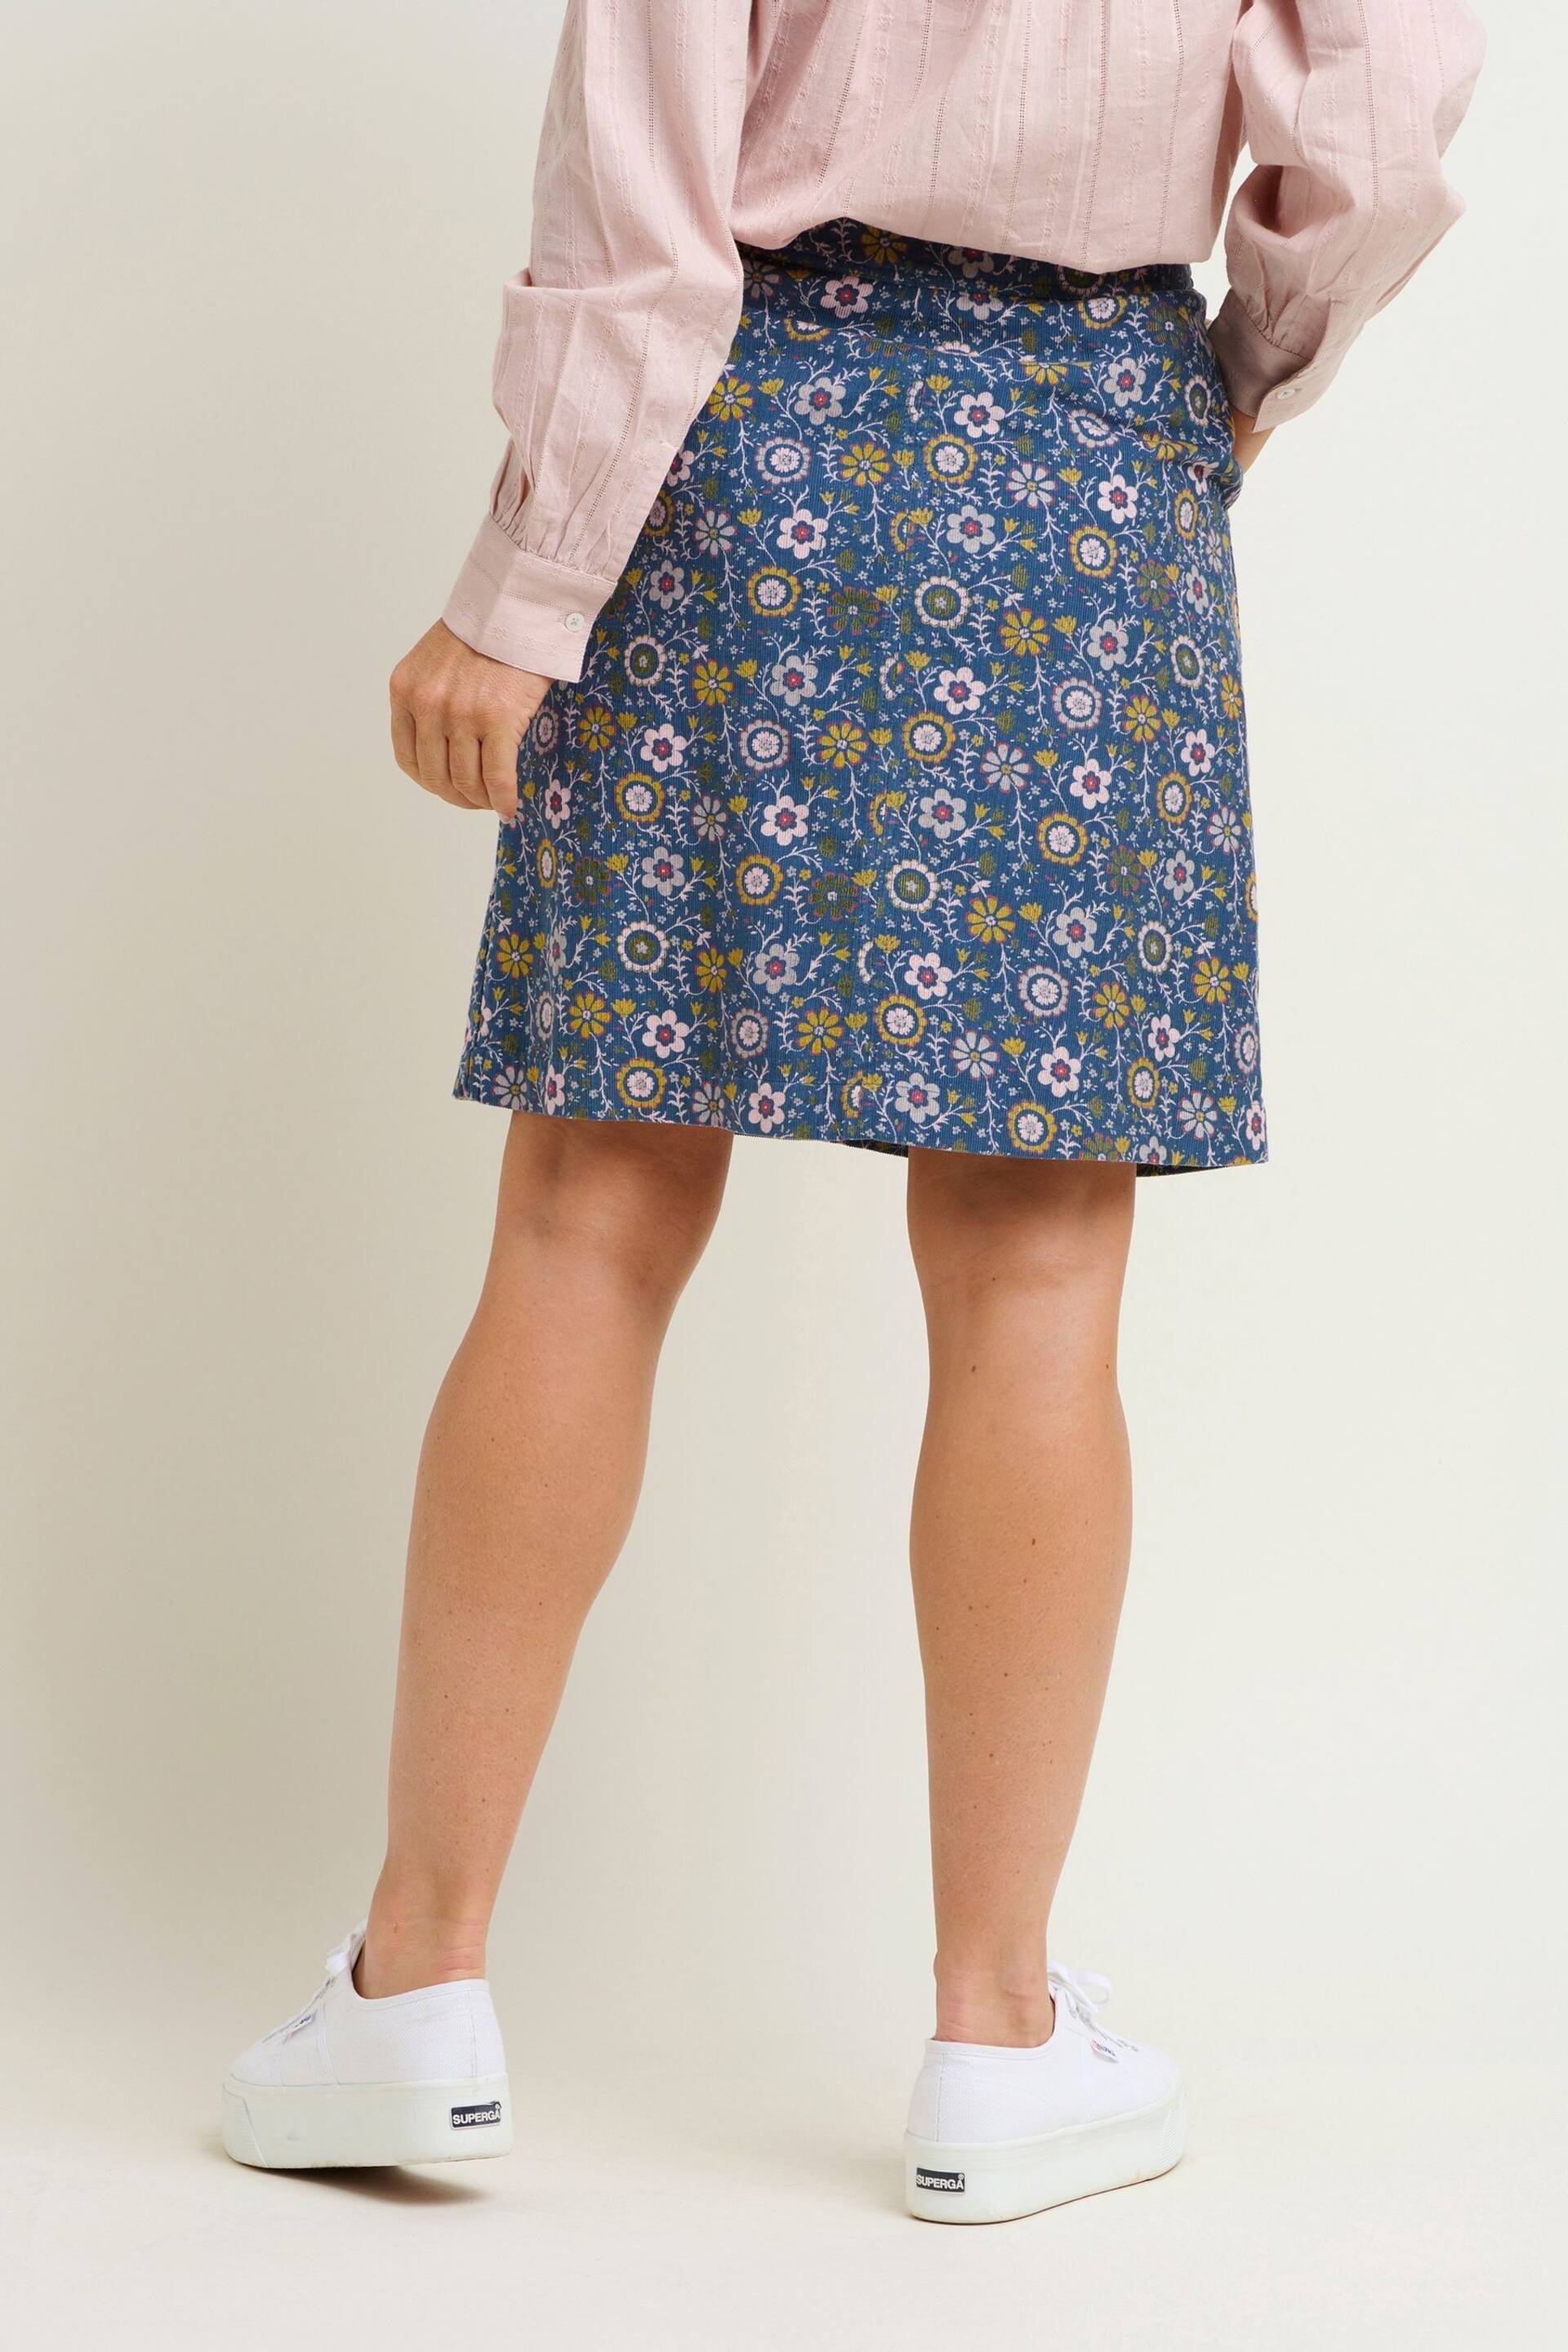 Brakeburn Blue Folk Floral Cord Skirt - Image 2 of 4